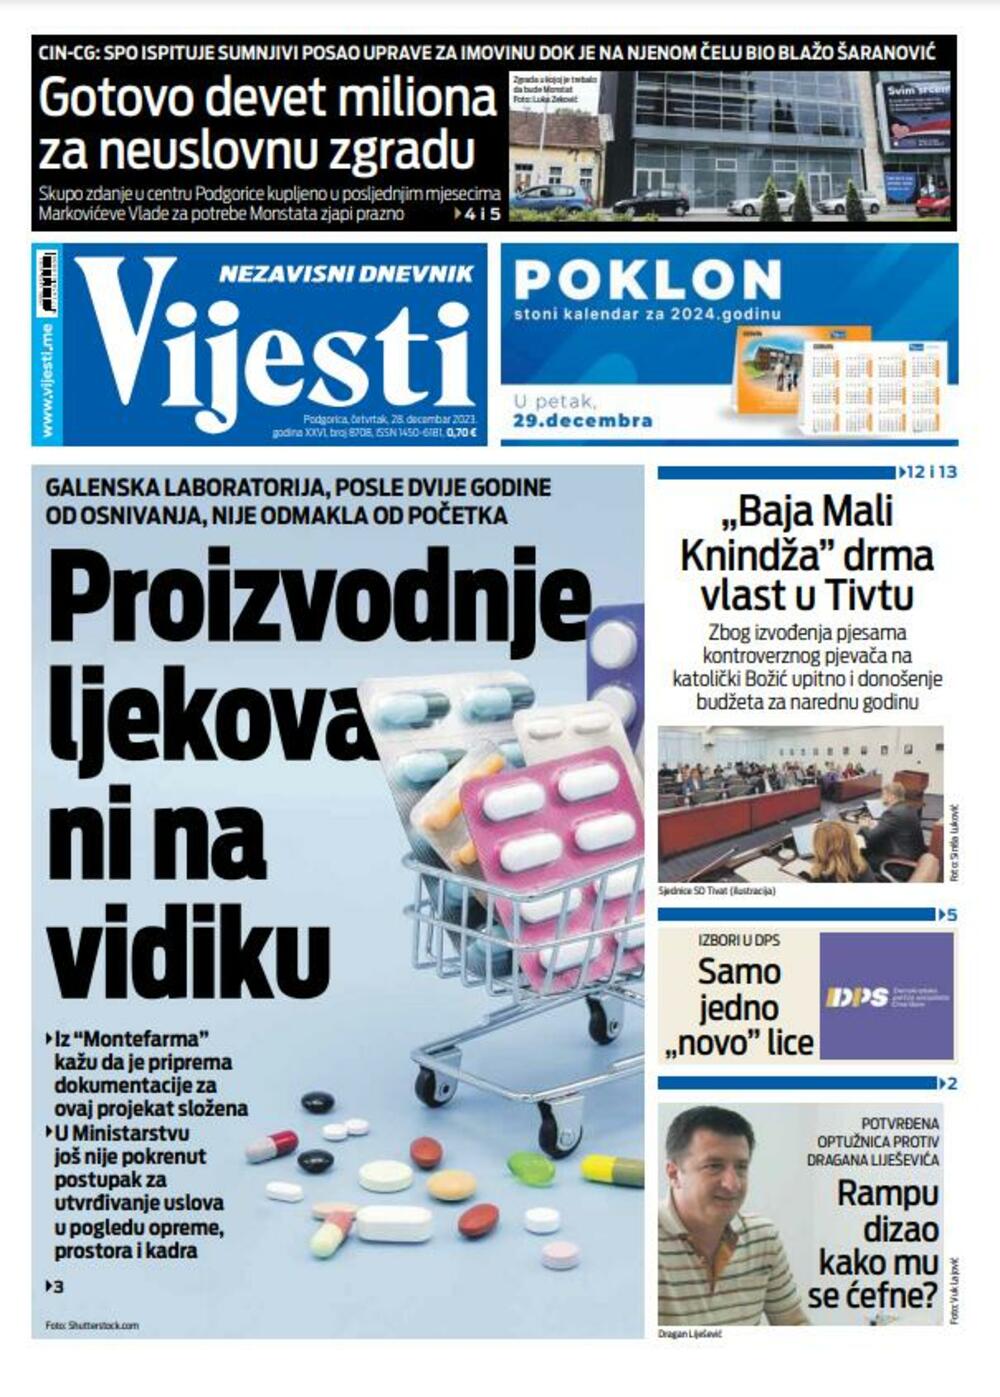 Naslovna strana "Vijesti" za 28. decembar 2023., Foto: Vijesti